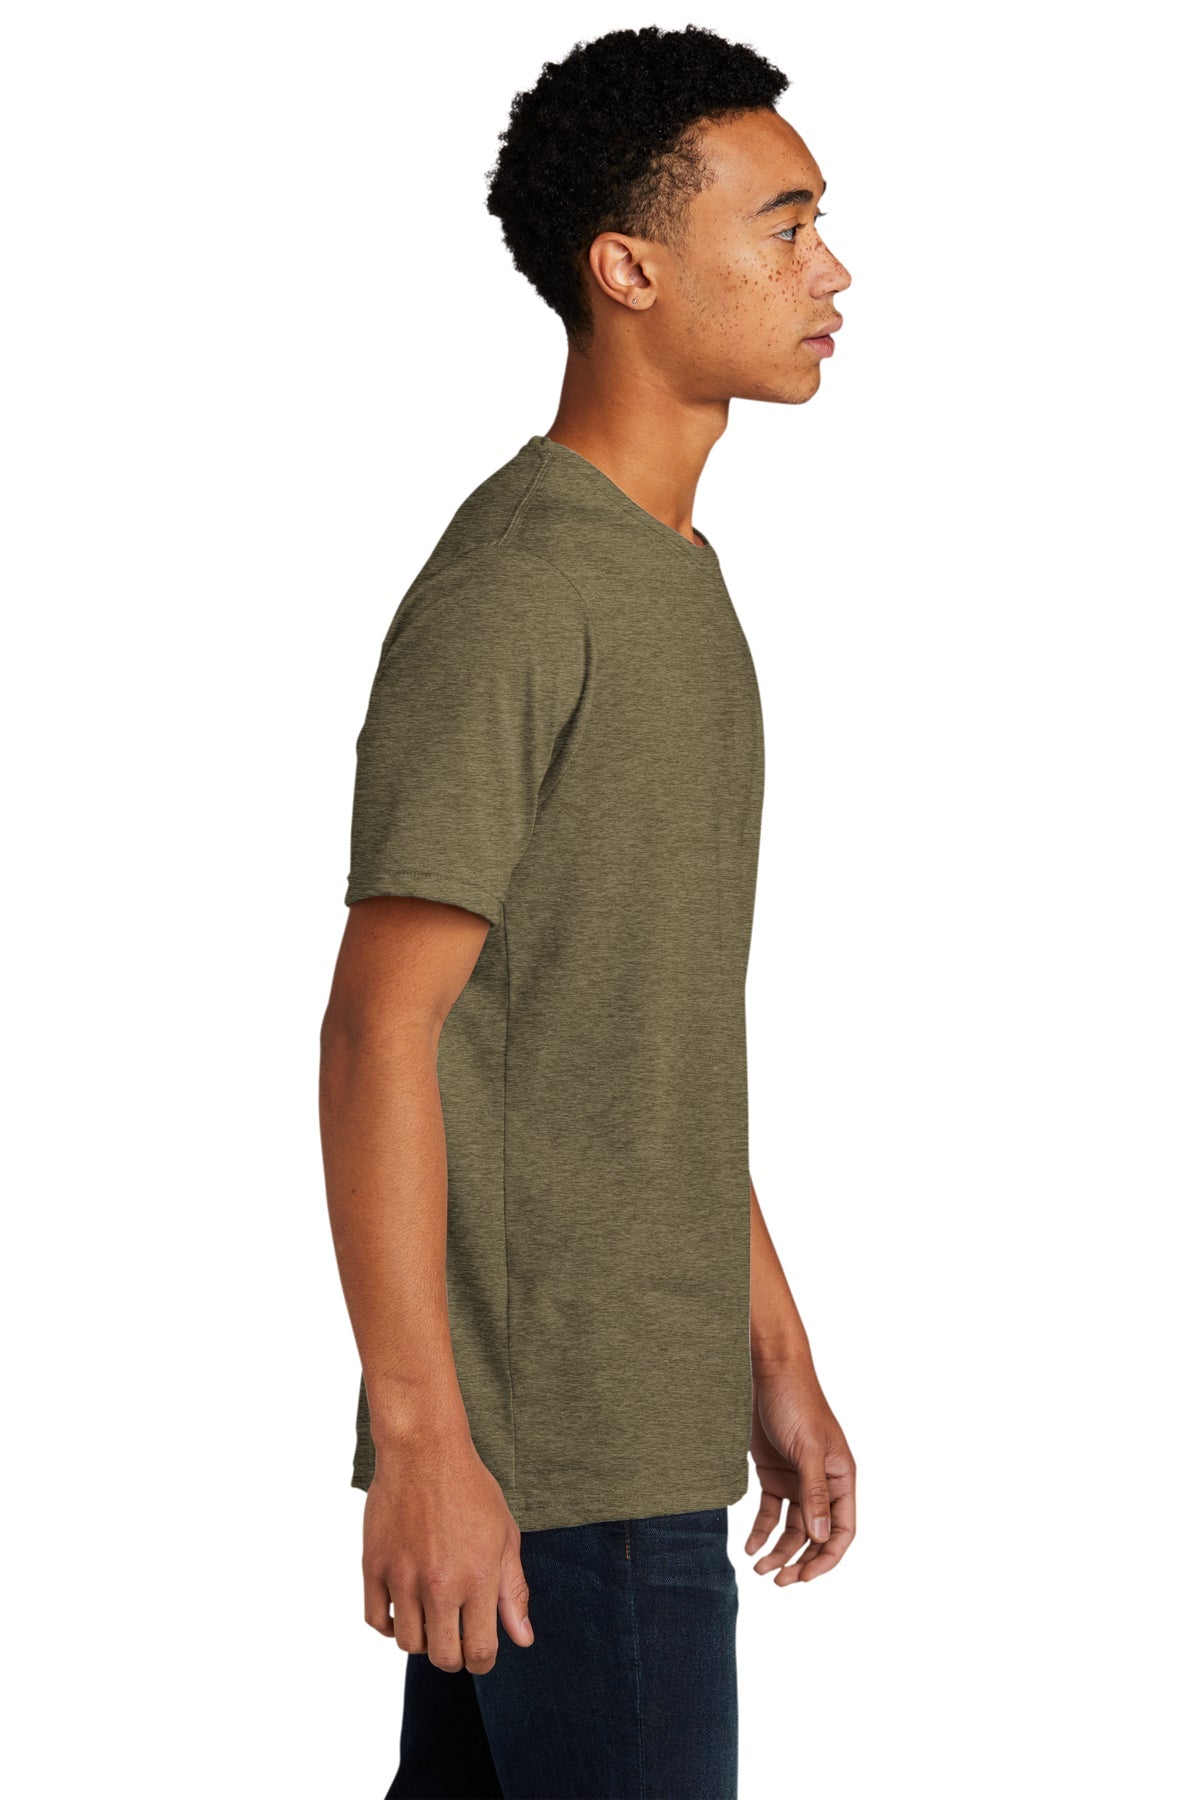 Next Level Unisex Poly Cotton Custom T-Shirts, Sage